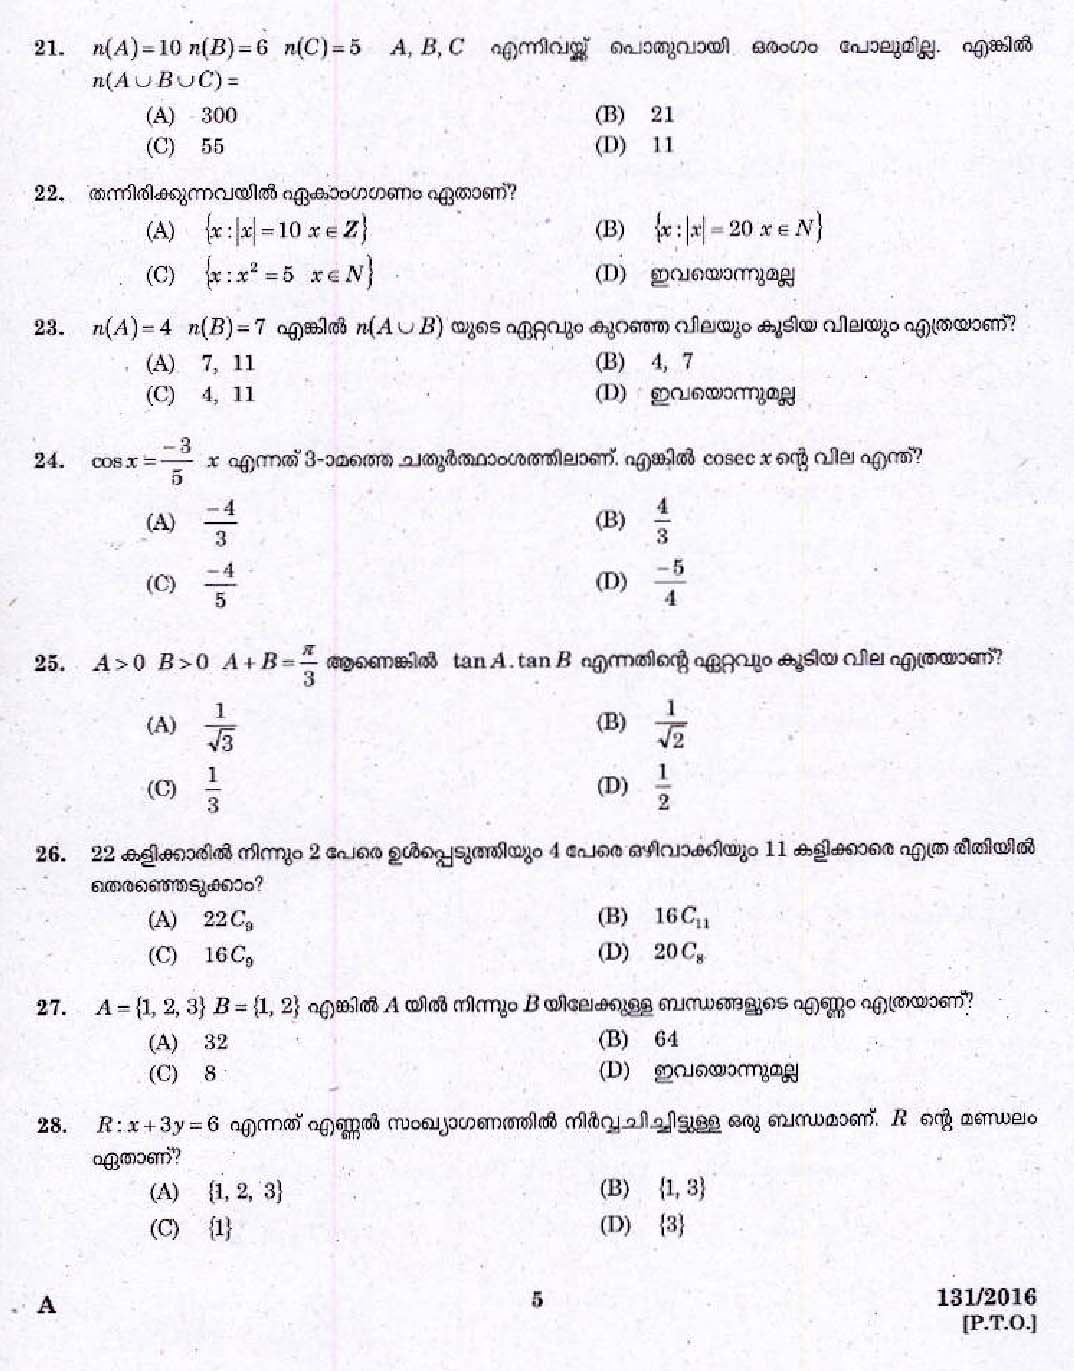 Kerala PSC High School Assistant Mathematics Question Paper Code 1312016 3